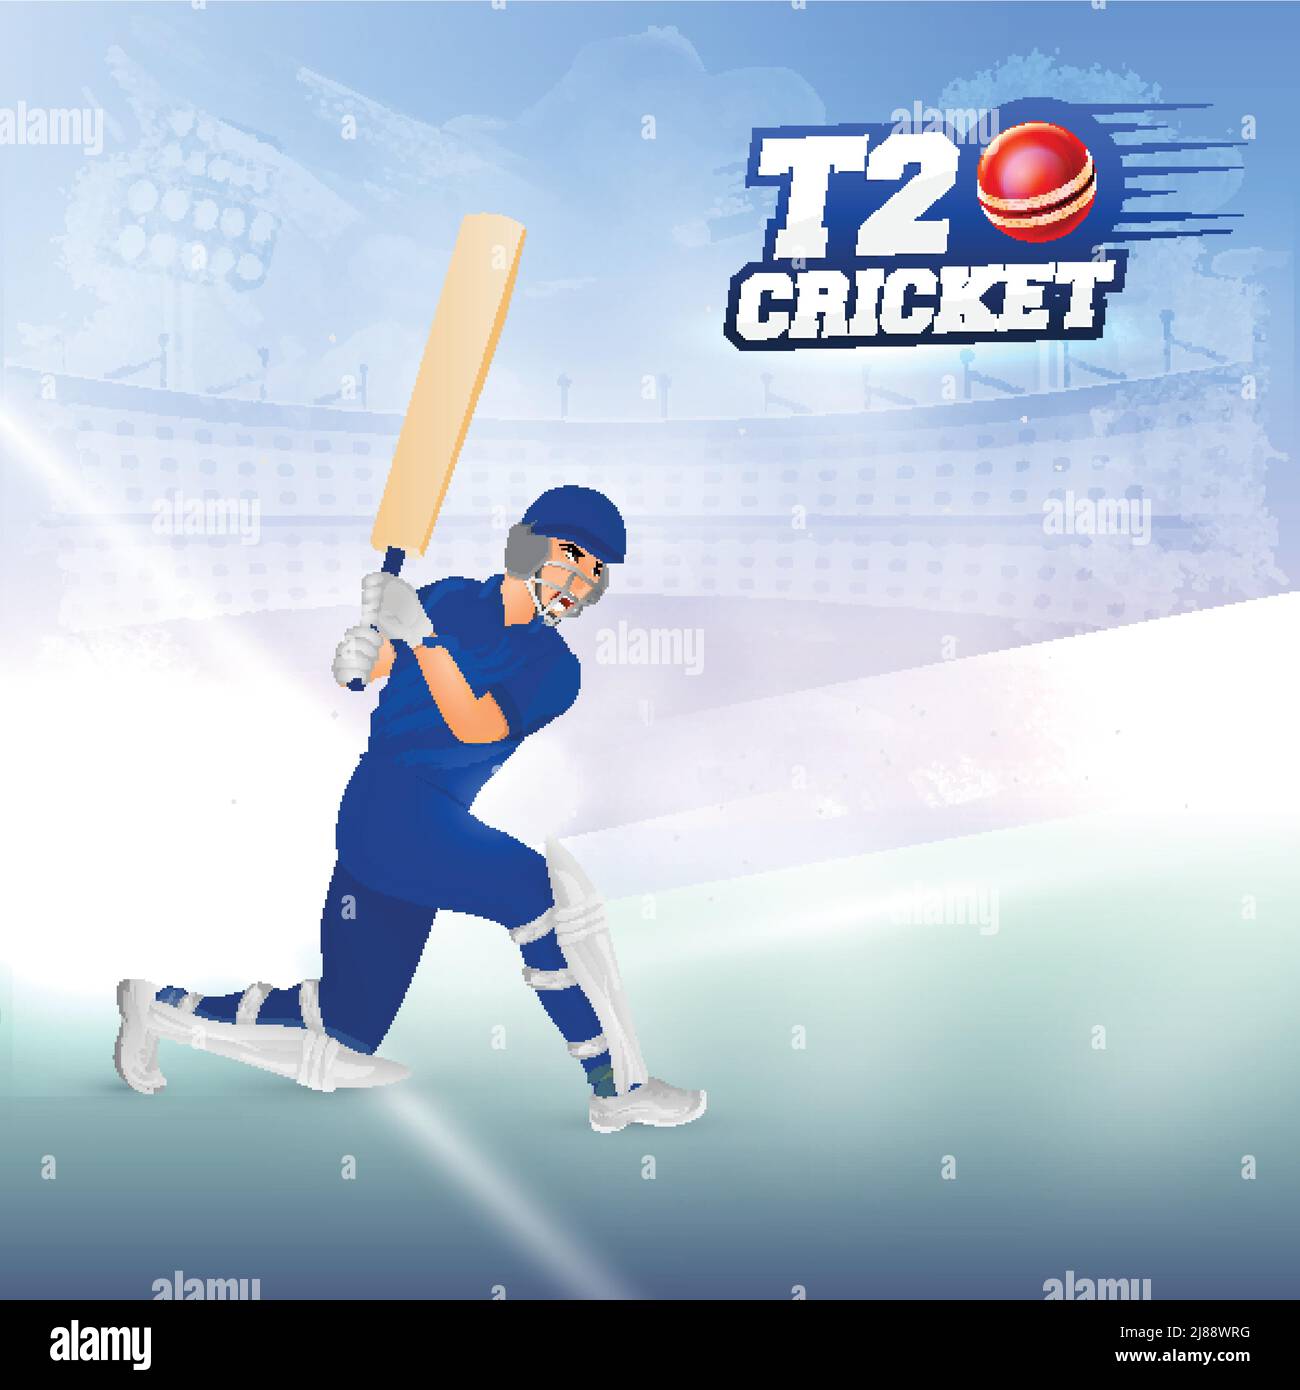 Sticker Style T20 Cricket Font mit Batsman-Spieler in der spielenden Pose auf abstrakt blau glänzenden Stadion Hintergrund. Stock Vektor